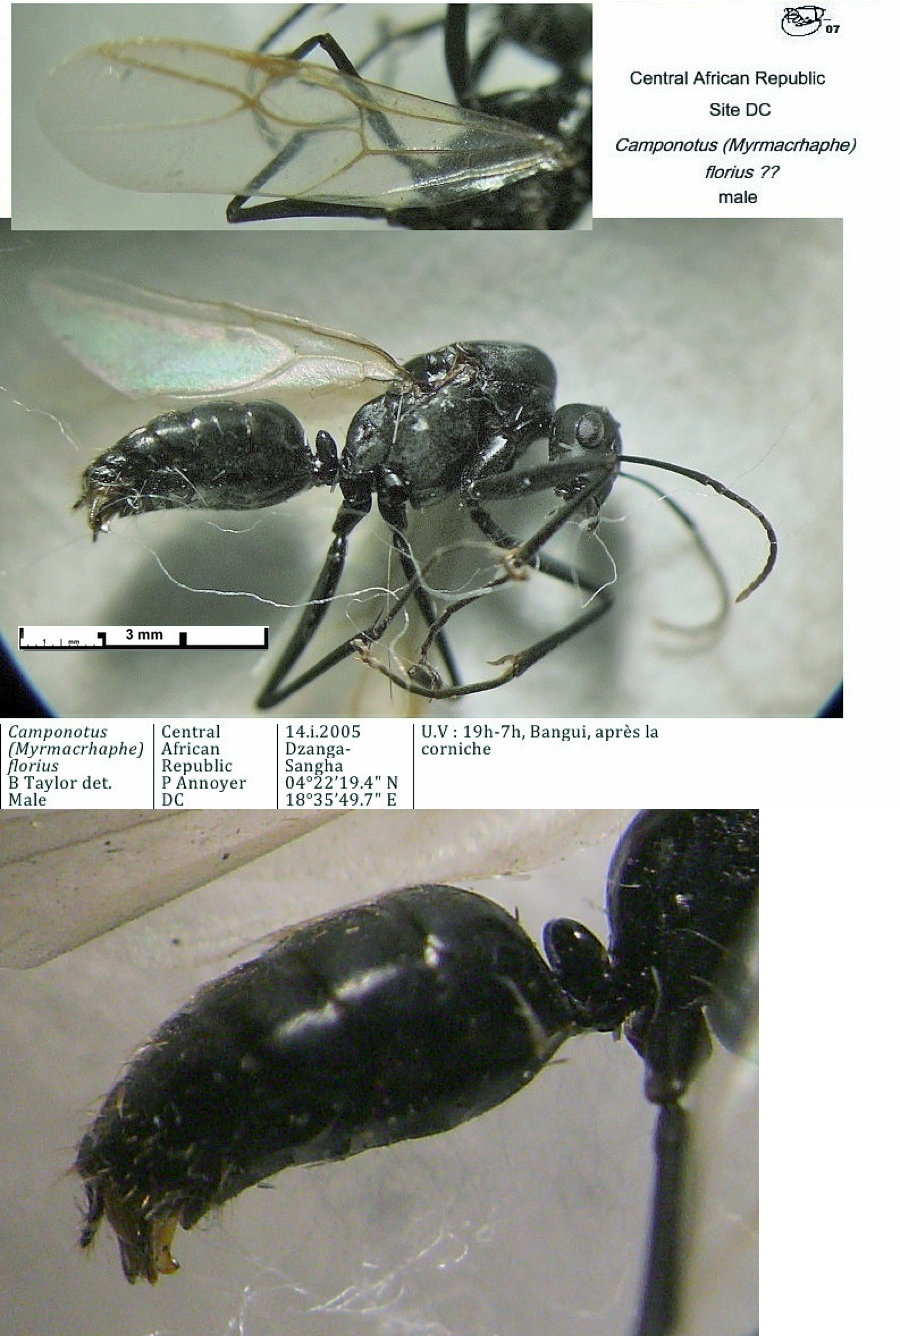 {Camponotus florius male ?}